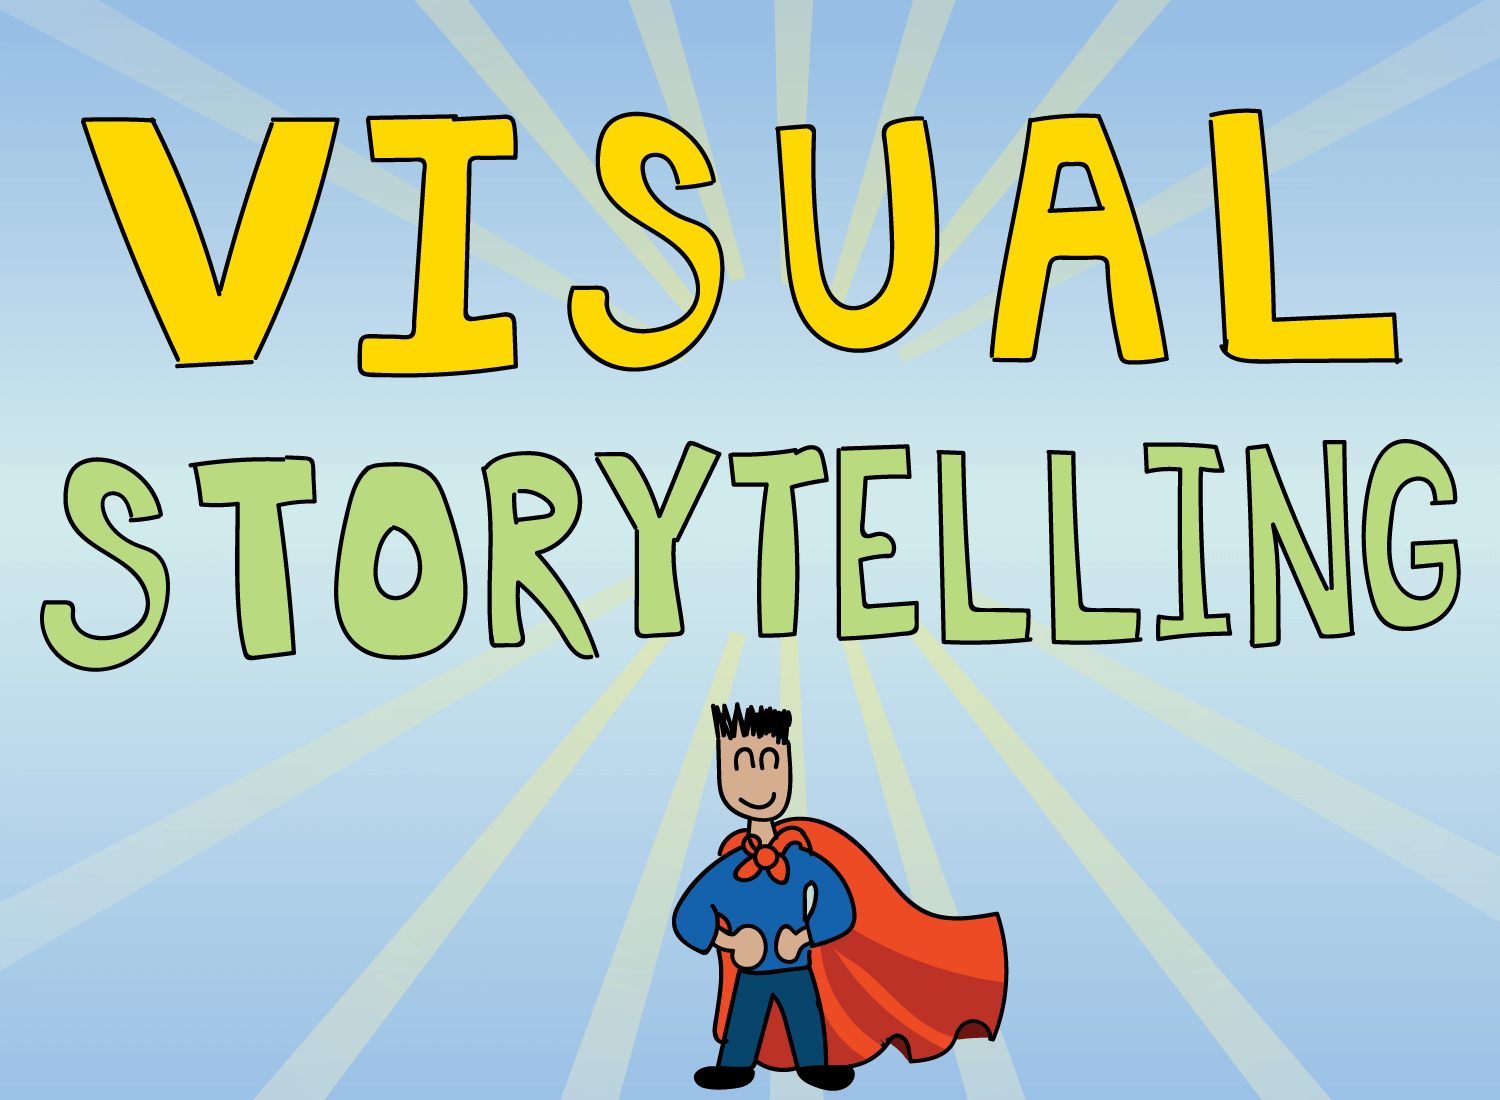 visual storytelling